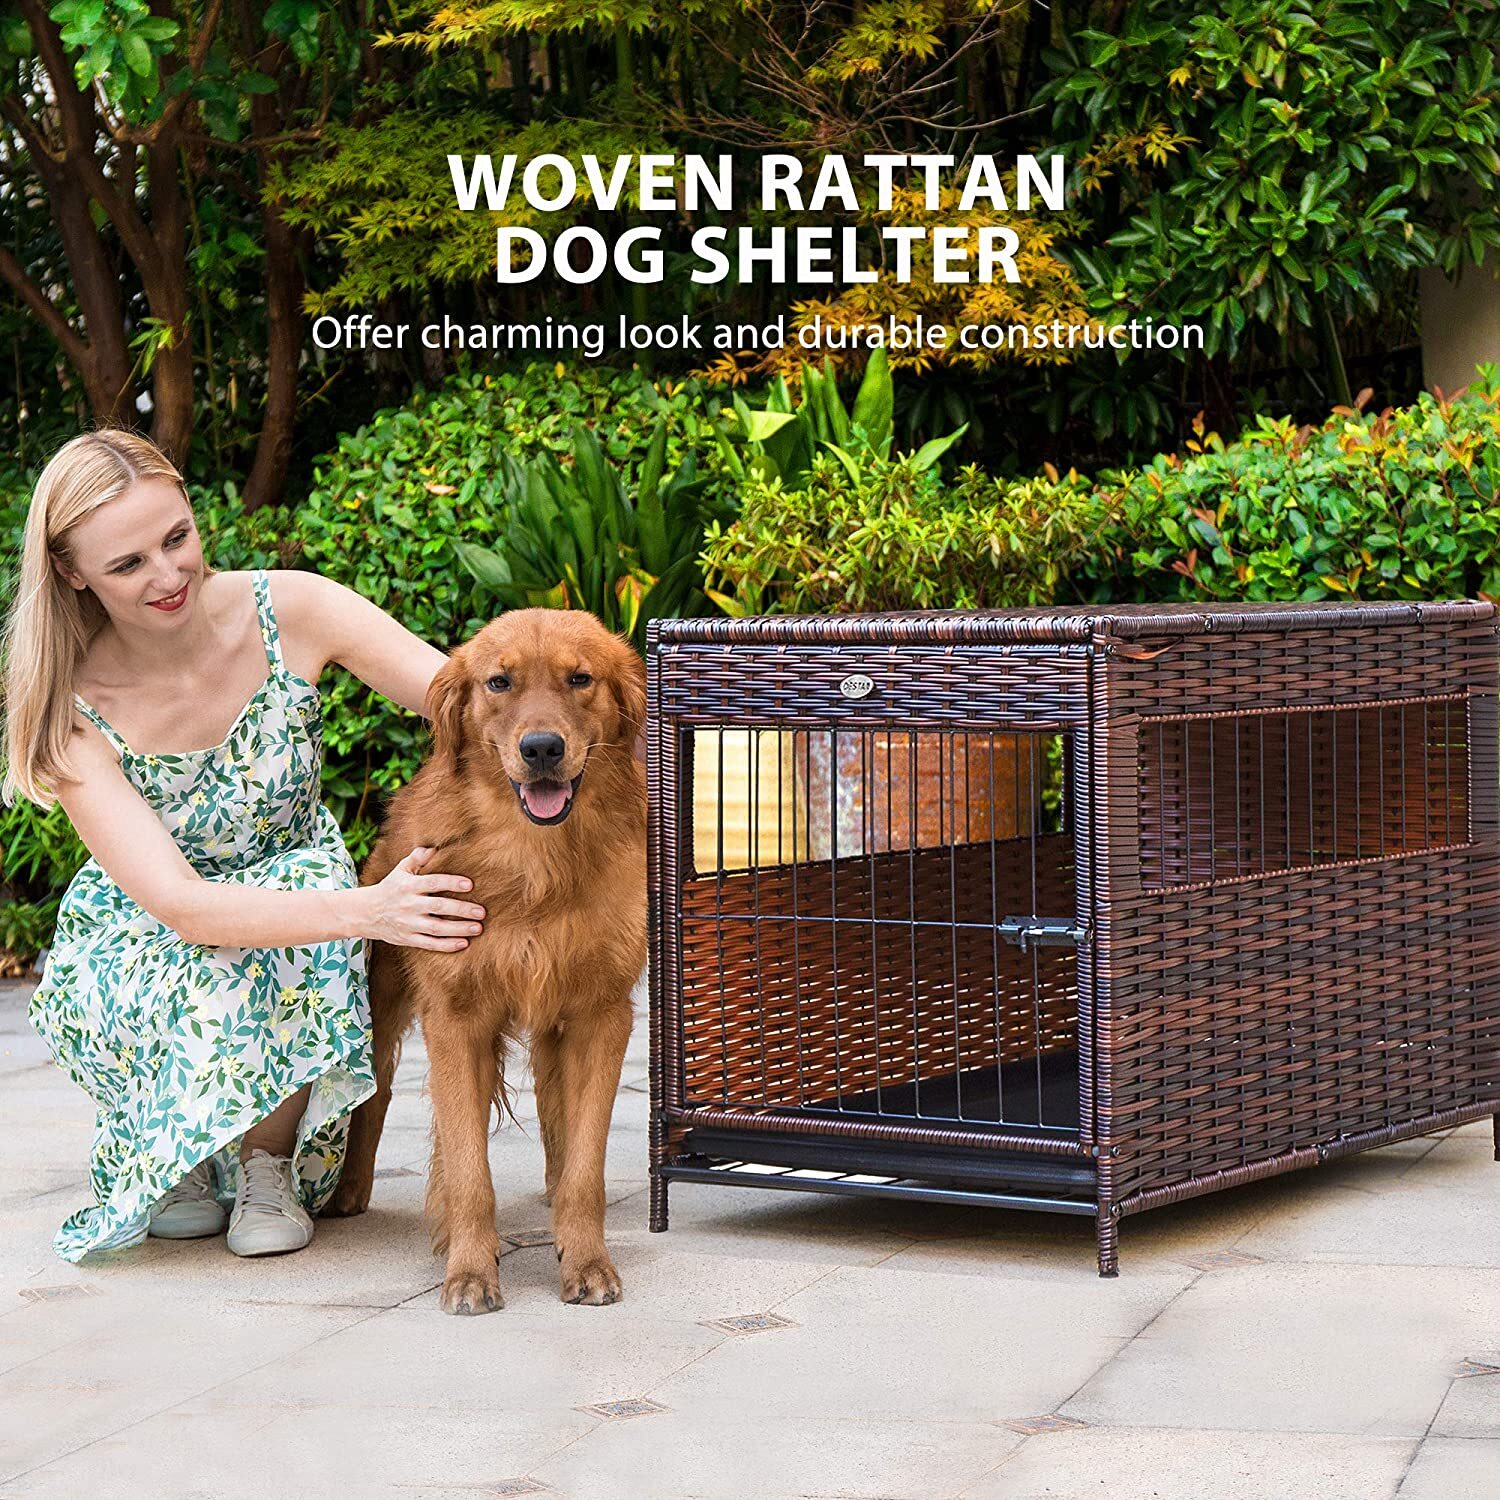 Unique dog crates made of rattan